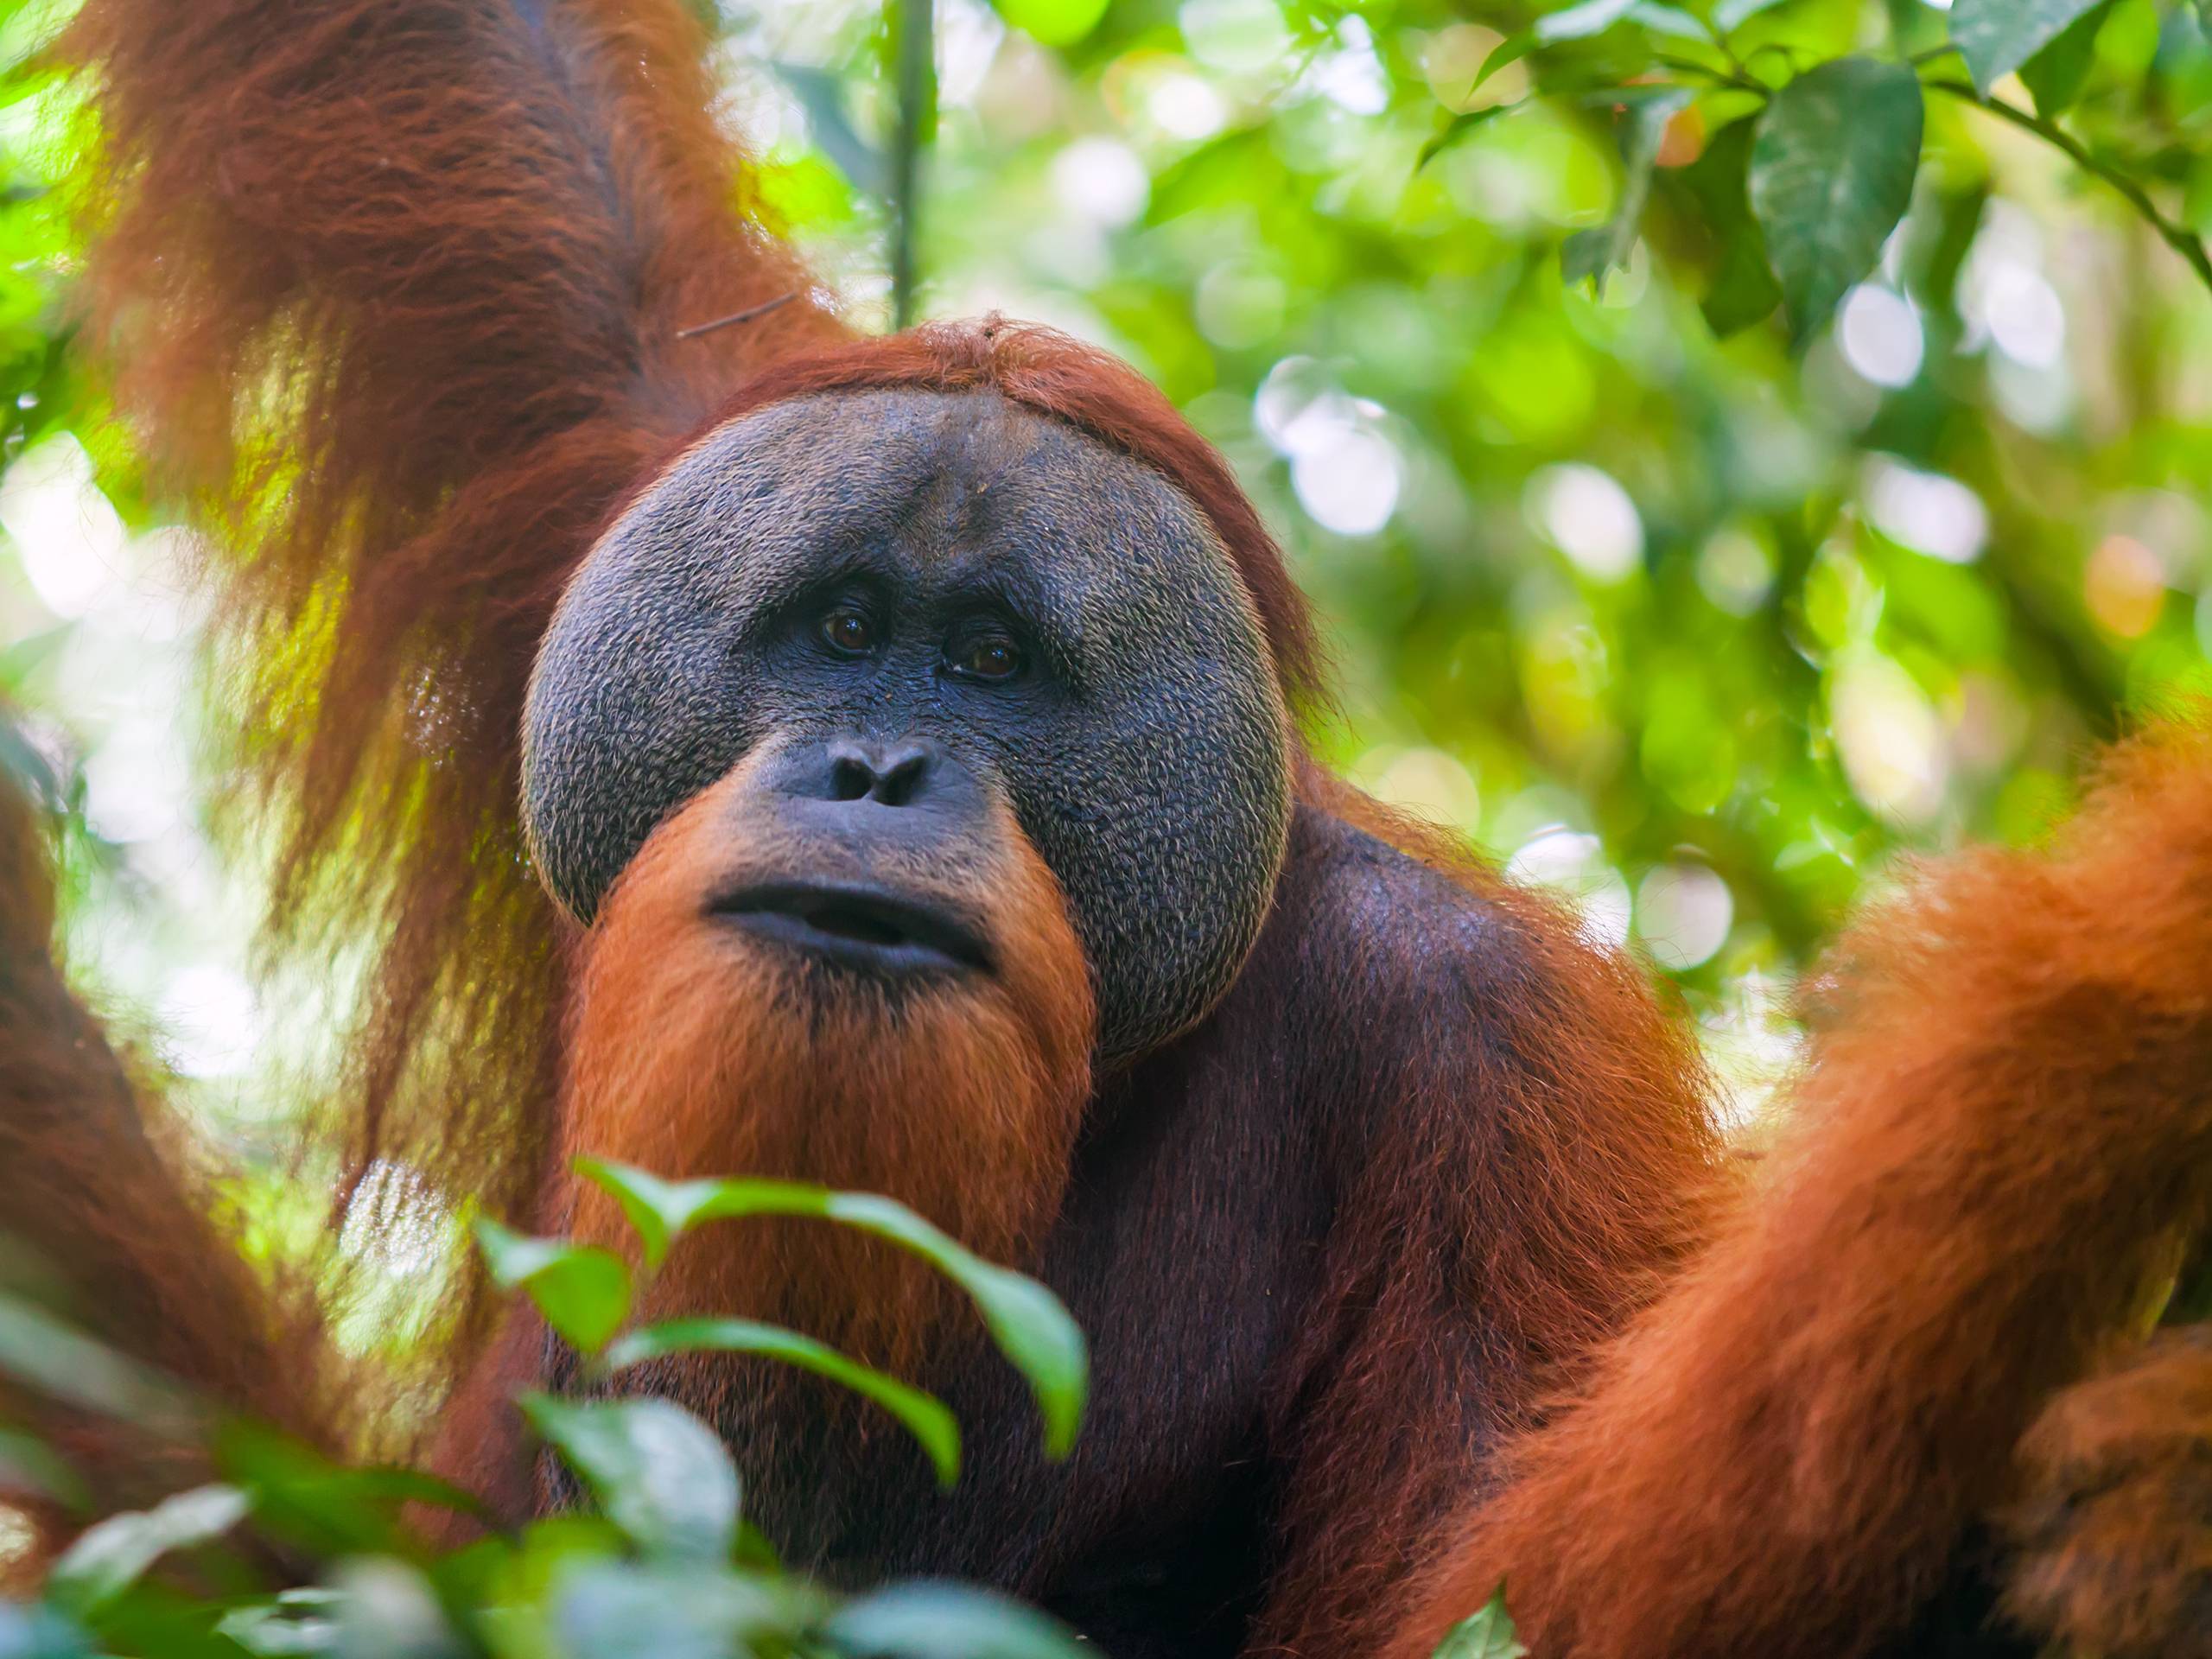 De top 10 orang-oetan feiten die u moet weten